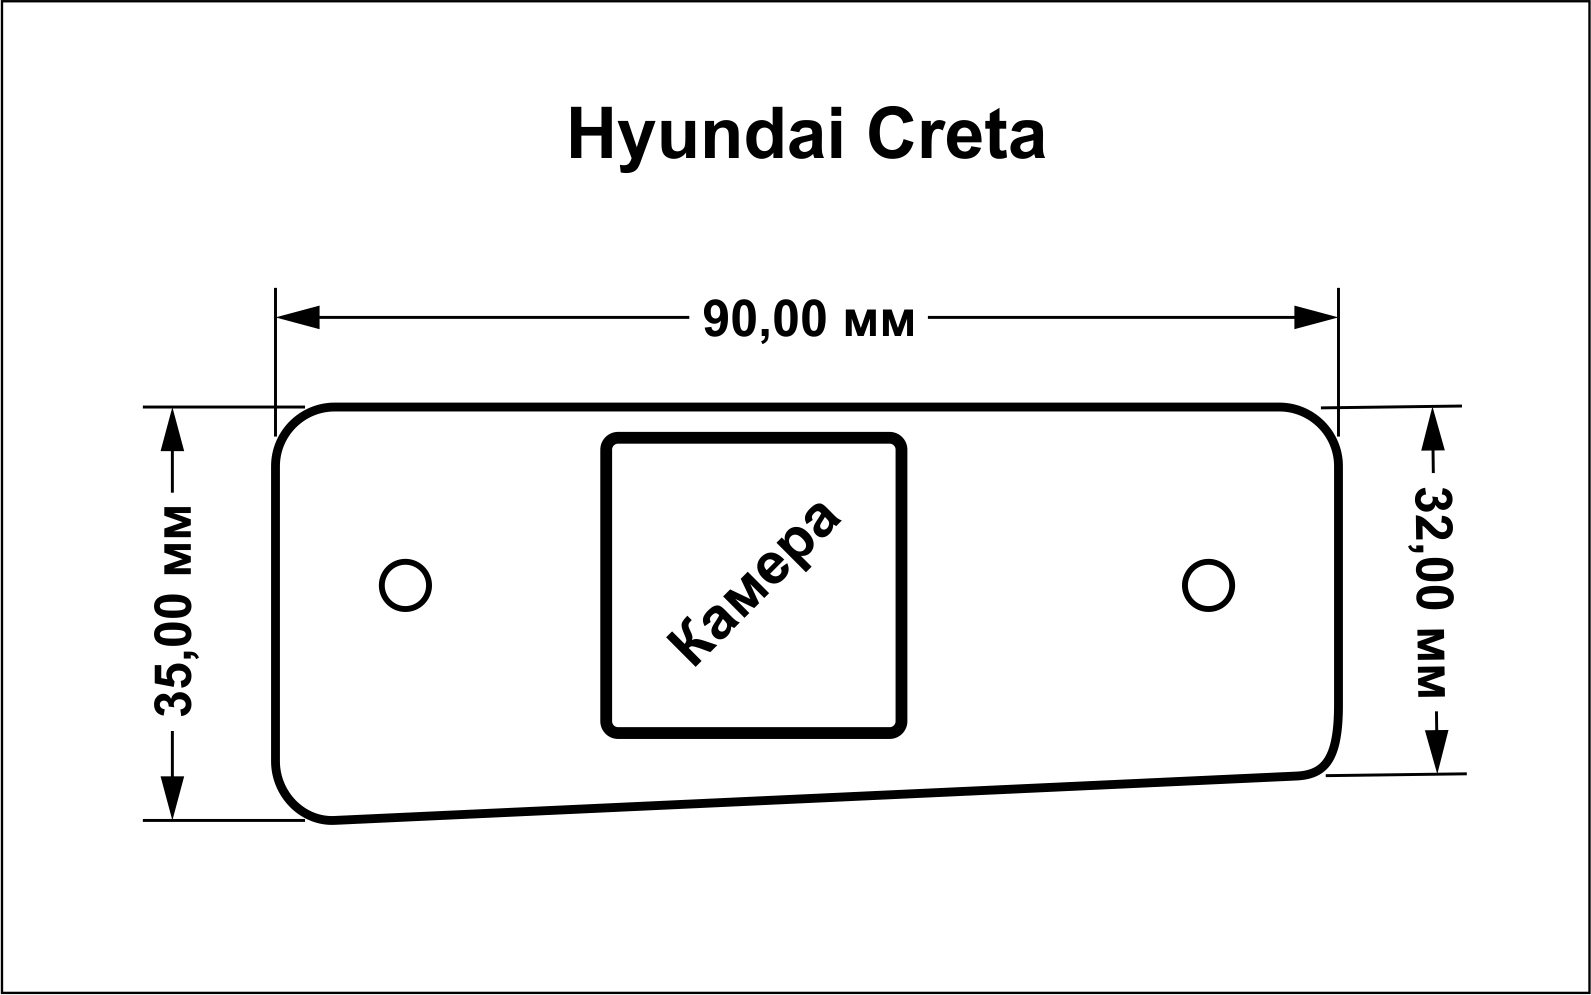 Hyundai Creta, SantaFe